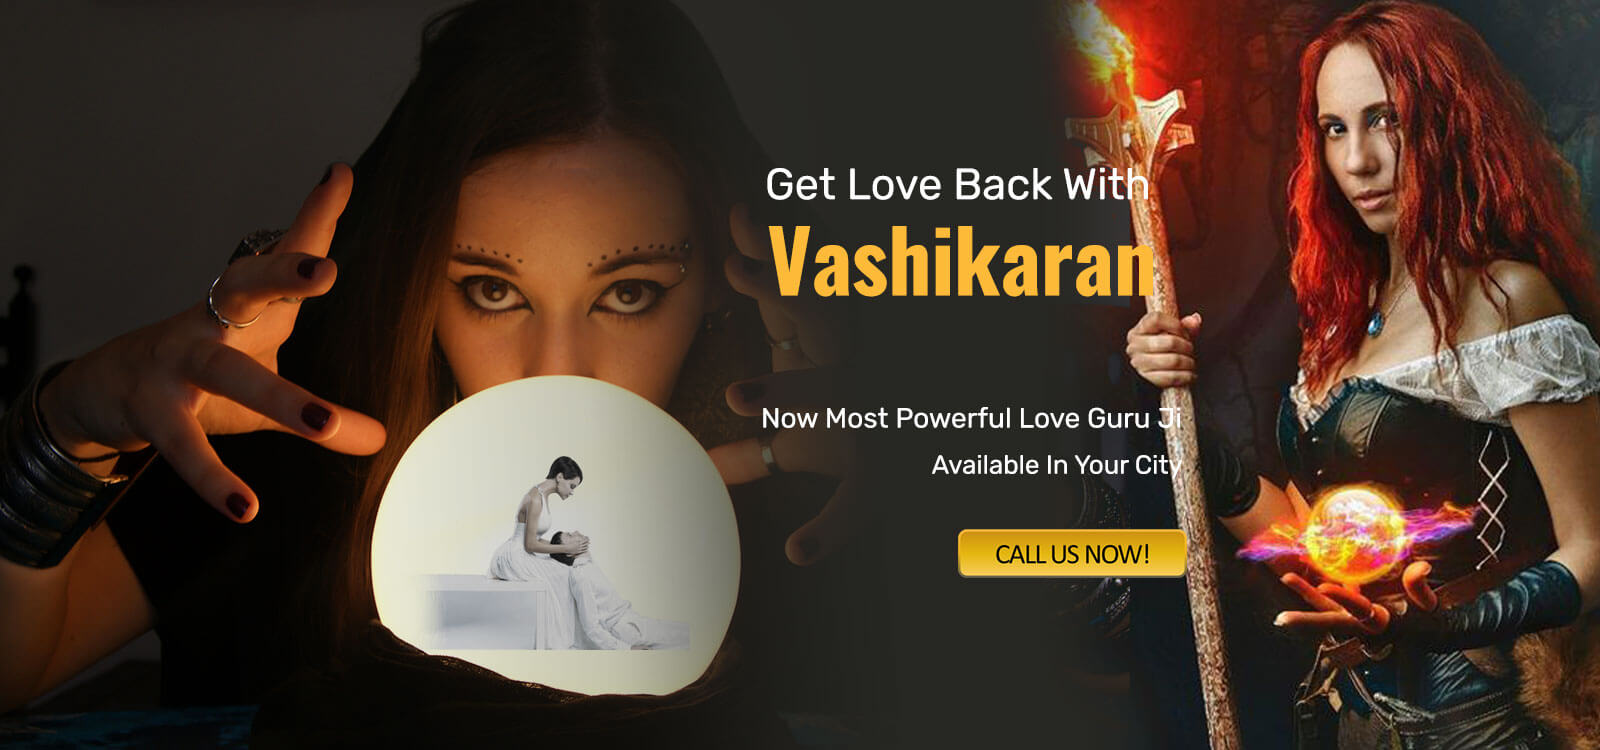 Powerful Vashikaran Mantras